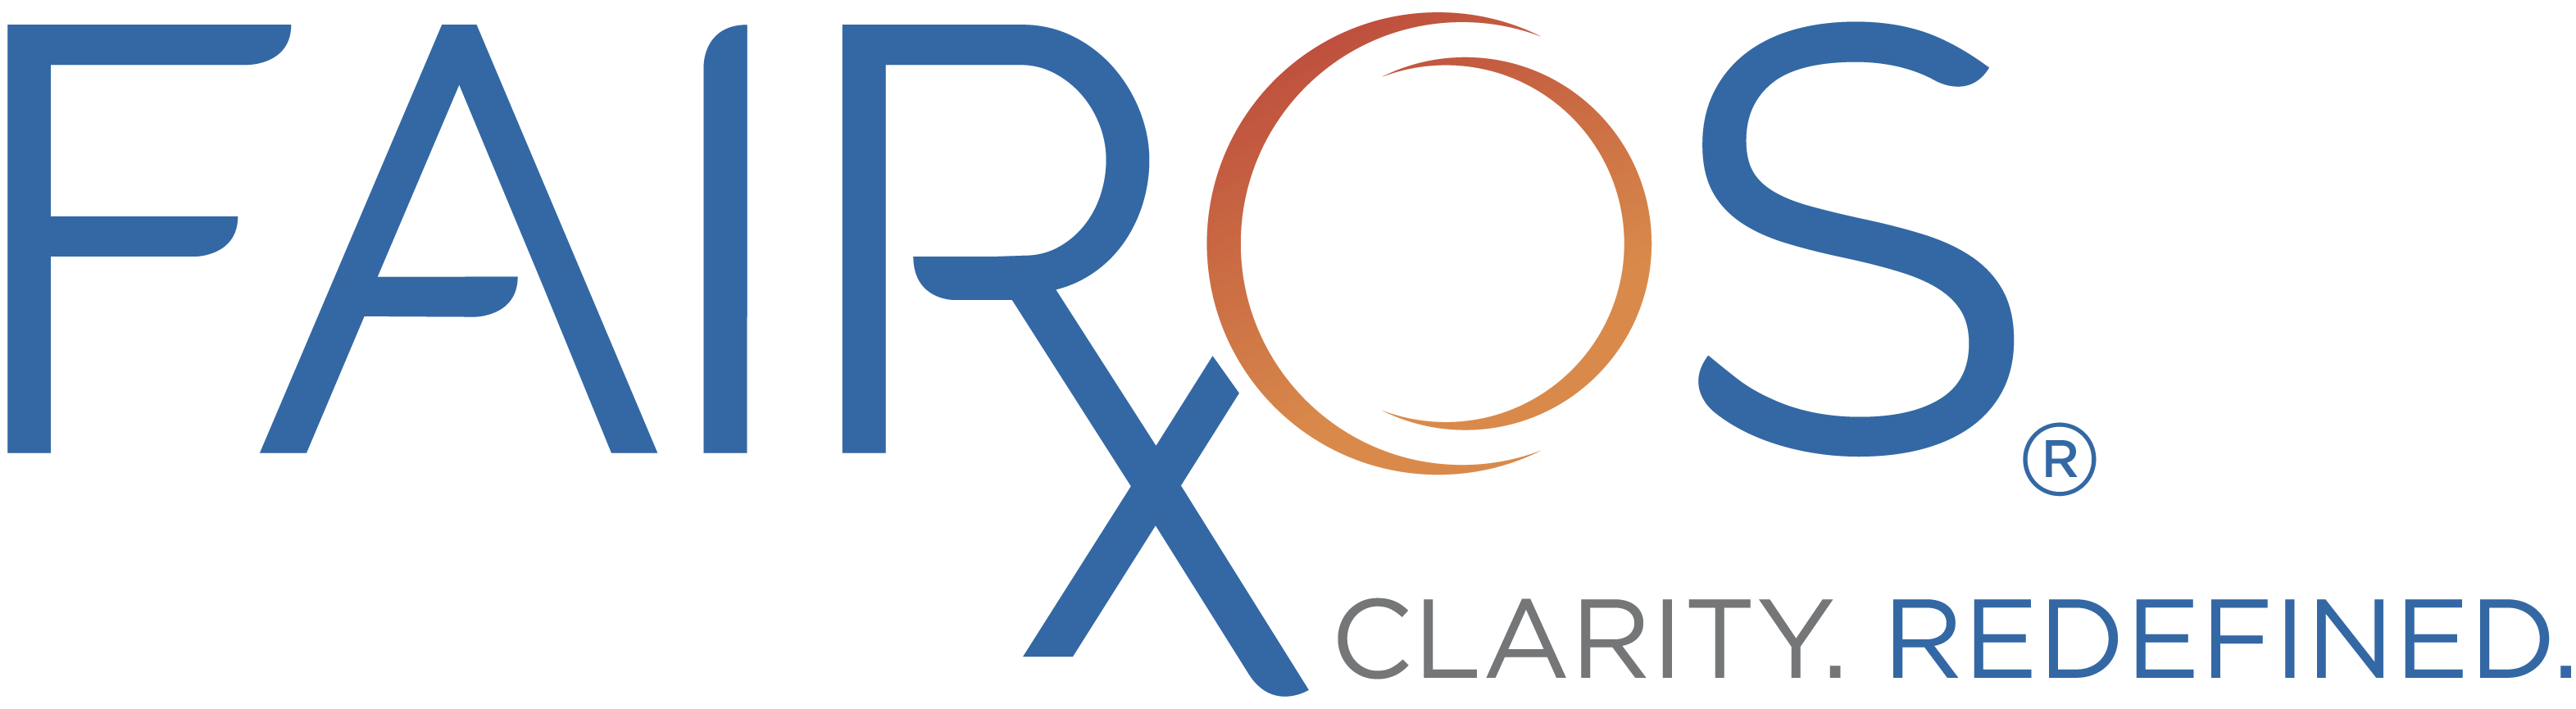 FairosRX Header Logo Color